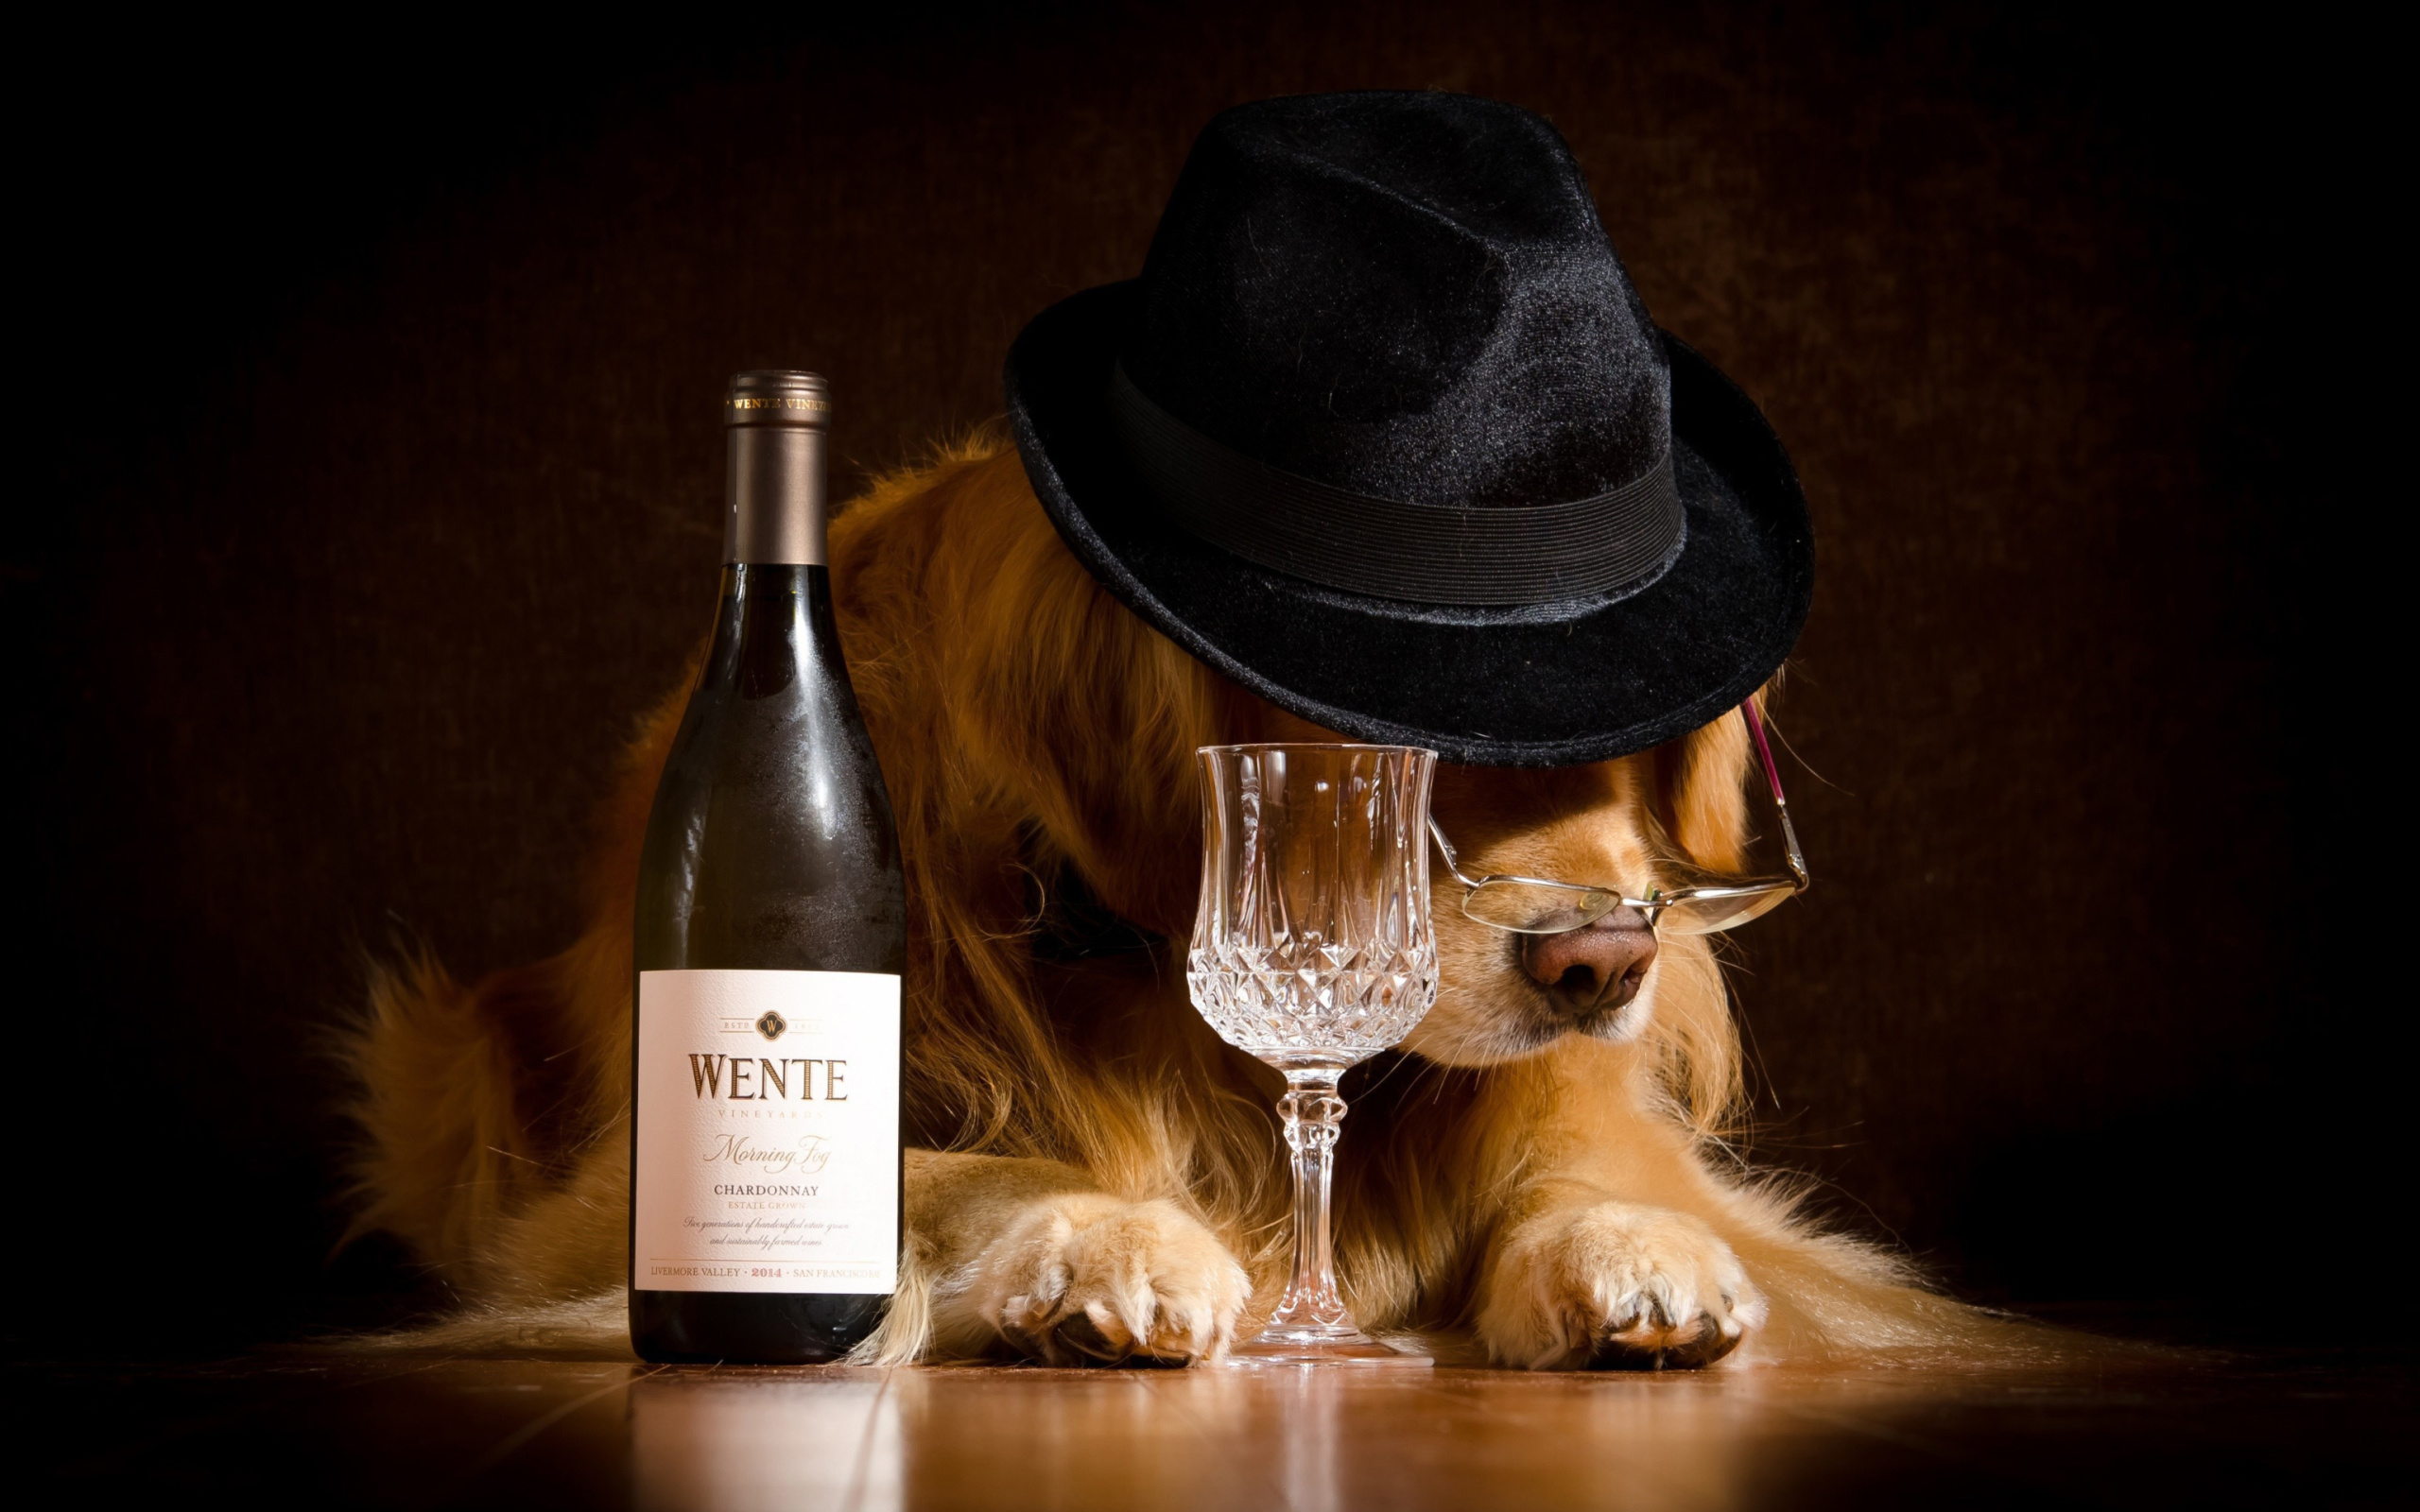 Обои Wine and Dog 2560x1600